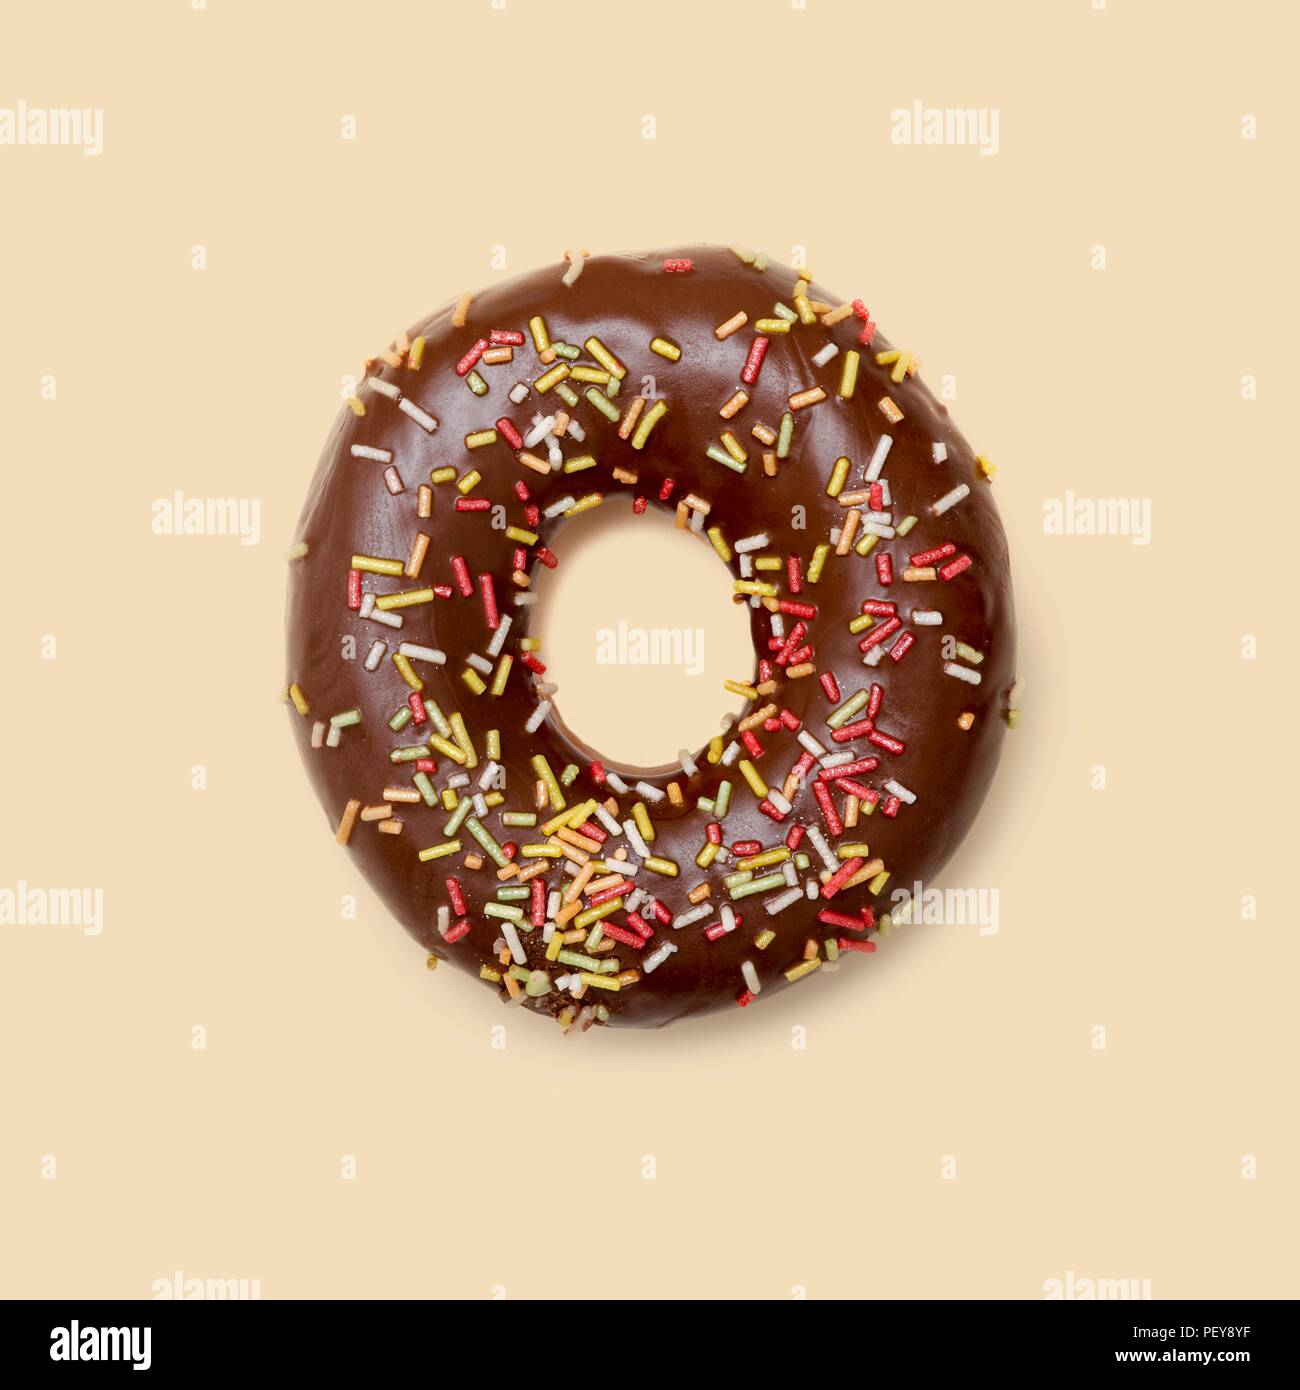 Donut de chocolate con azúcar de filamentos, Foto de estudio. Foto de stock